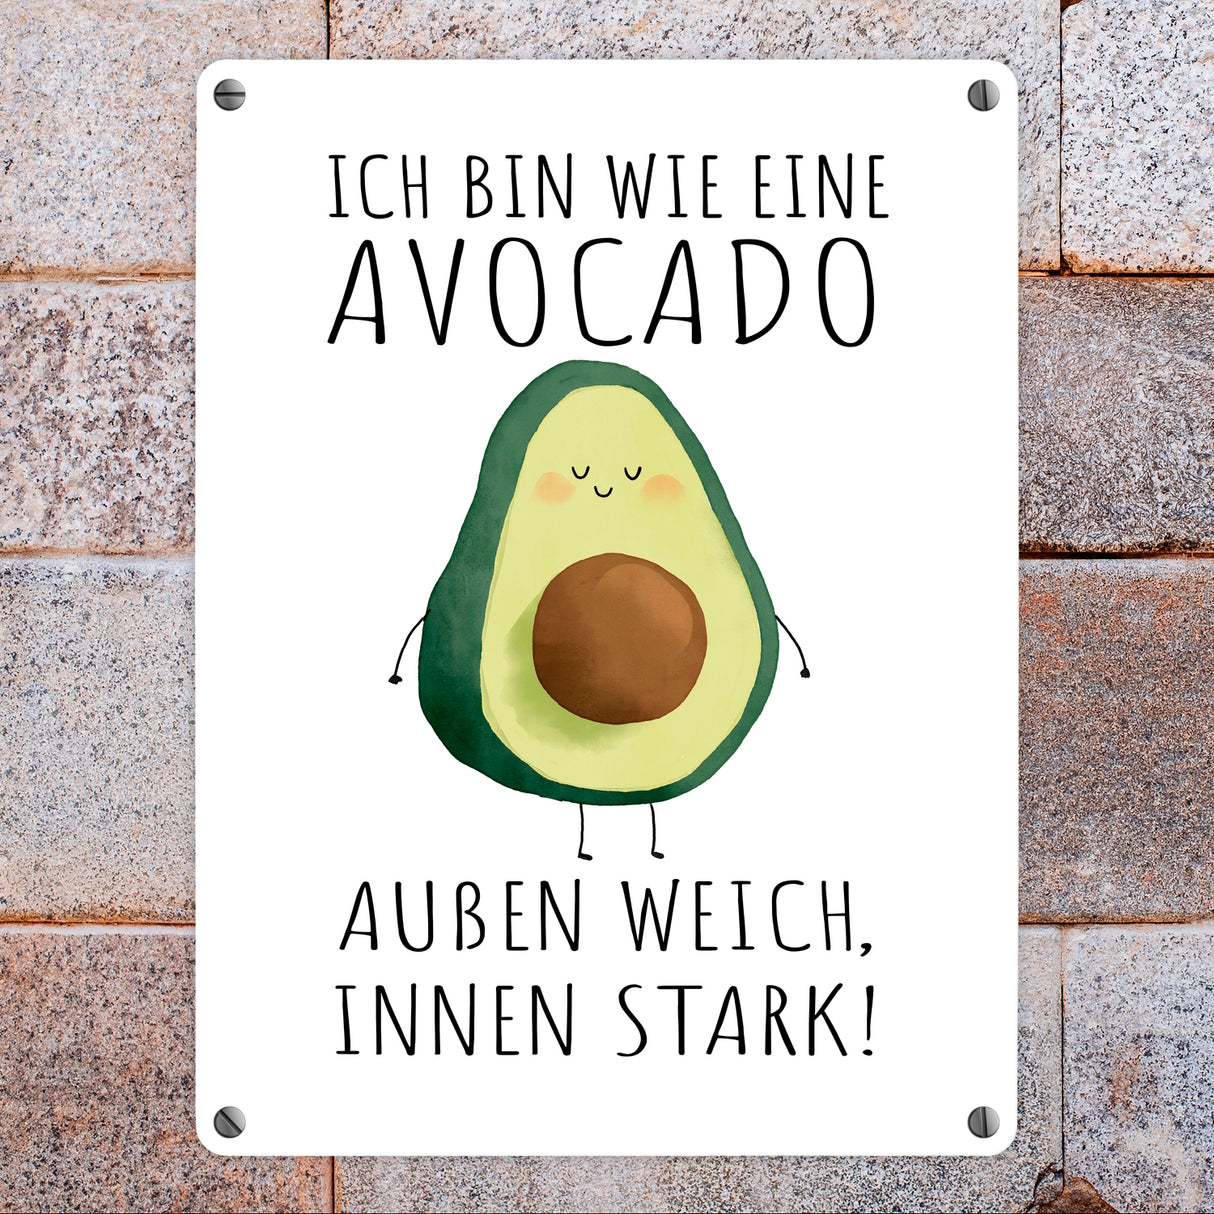 Avocado Metallschild in 15x20 cm mit Spruch Wie Avocado außen weich innen stark